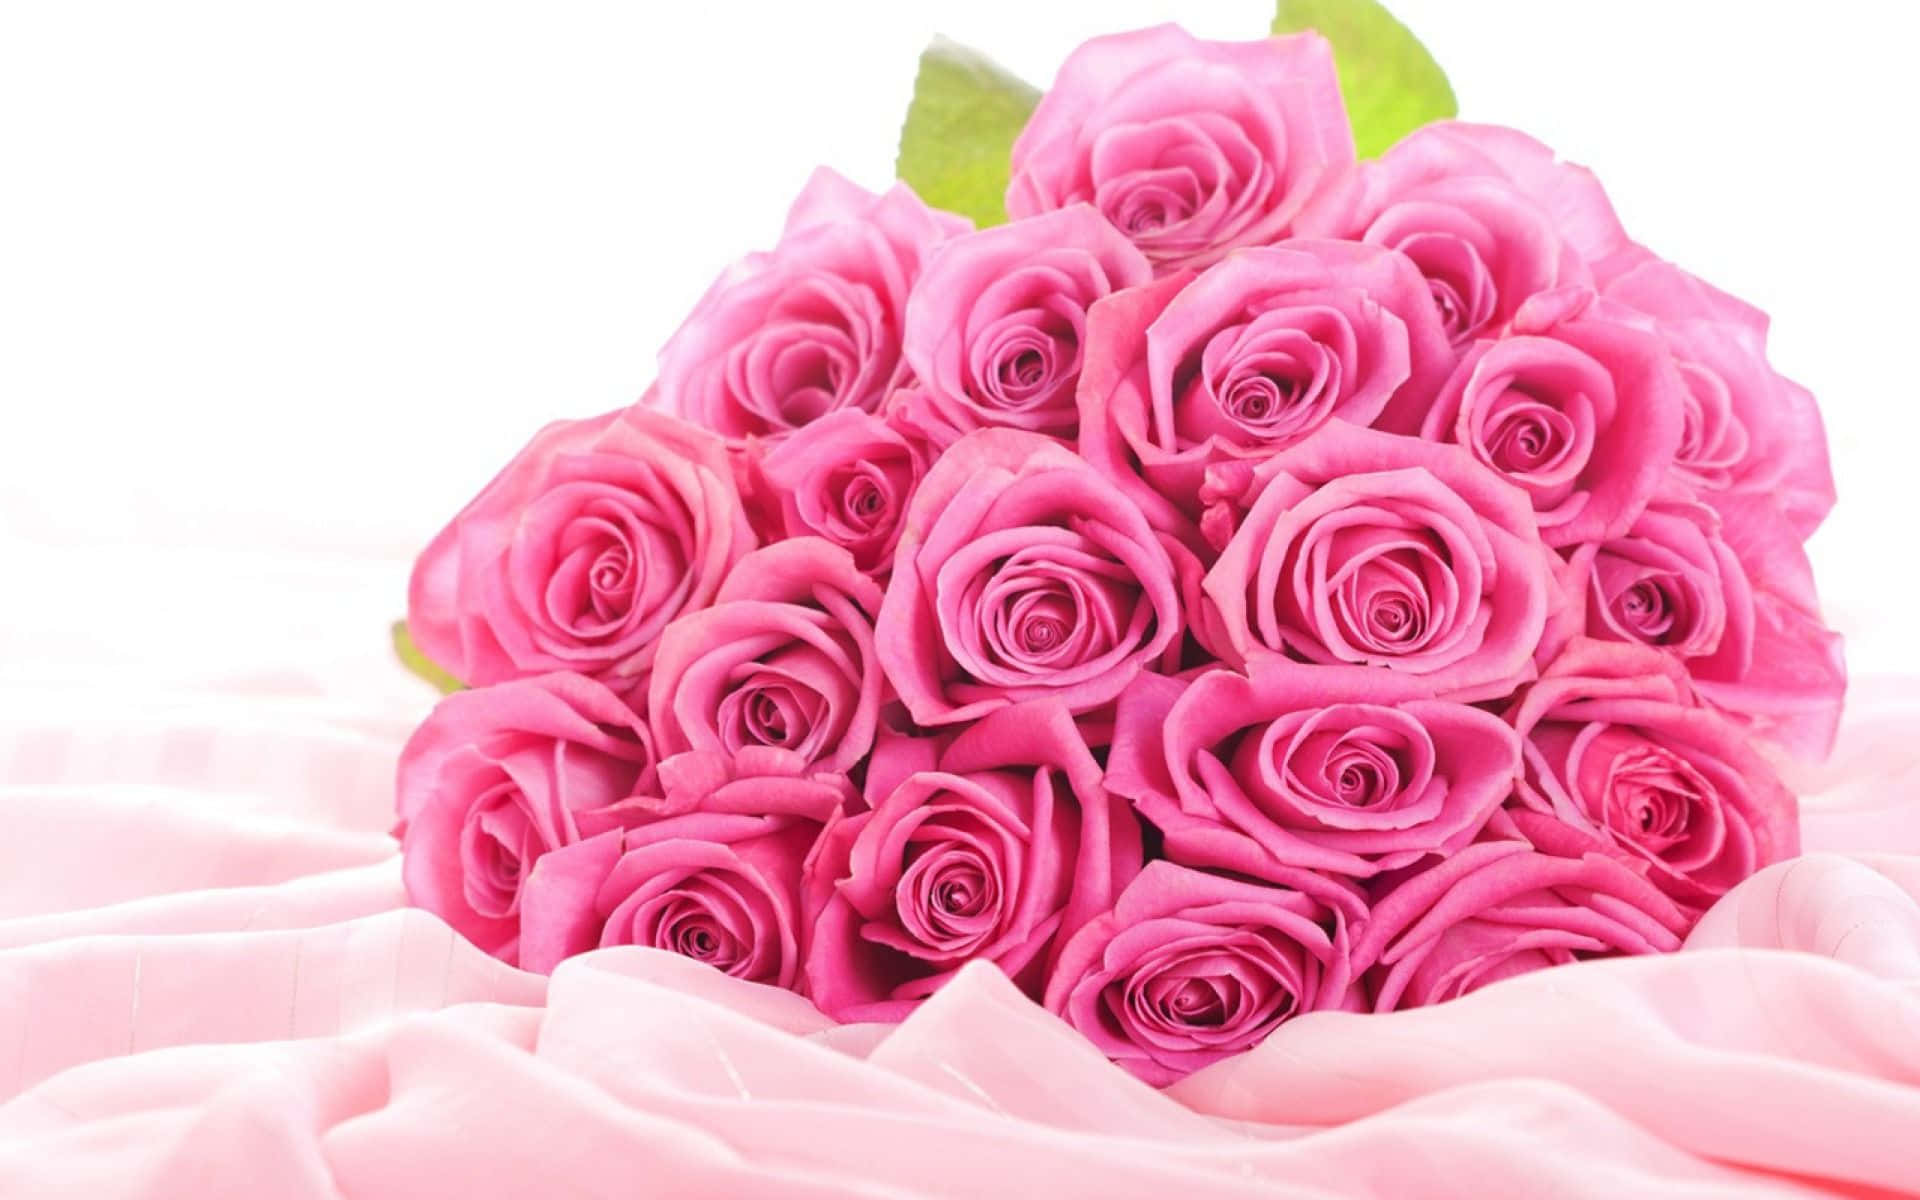 Ramode Flores Sobre Un Fondo De Tela Con Rosas Rosadas.